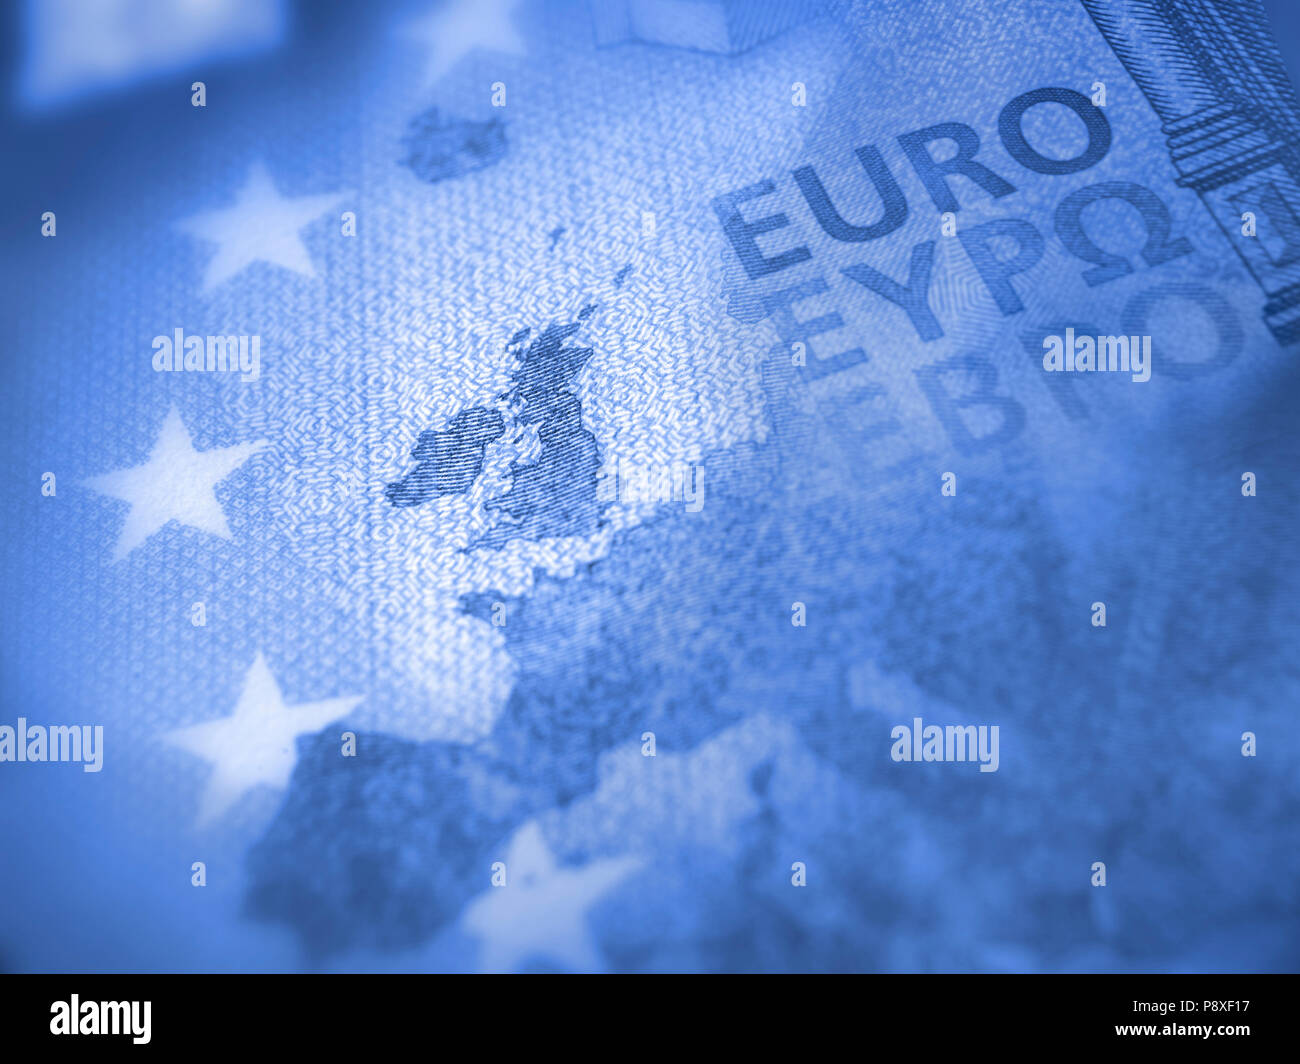 Messa a fuoco poco profonde sulla banconota in euro. Dettaglio della mappa dell'Europa con il focus sulla Gran Bretagna. Il colore blu di tono. Foto Stock